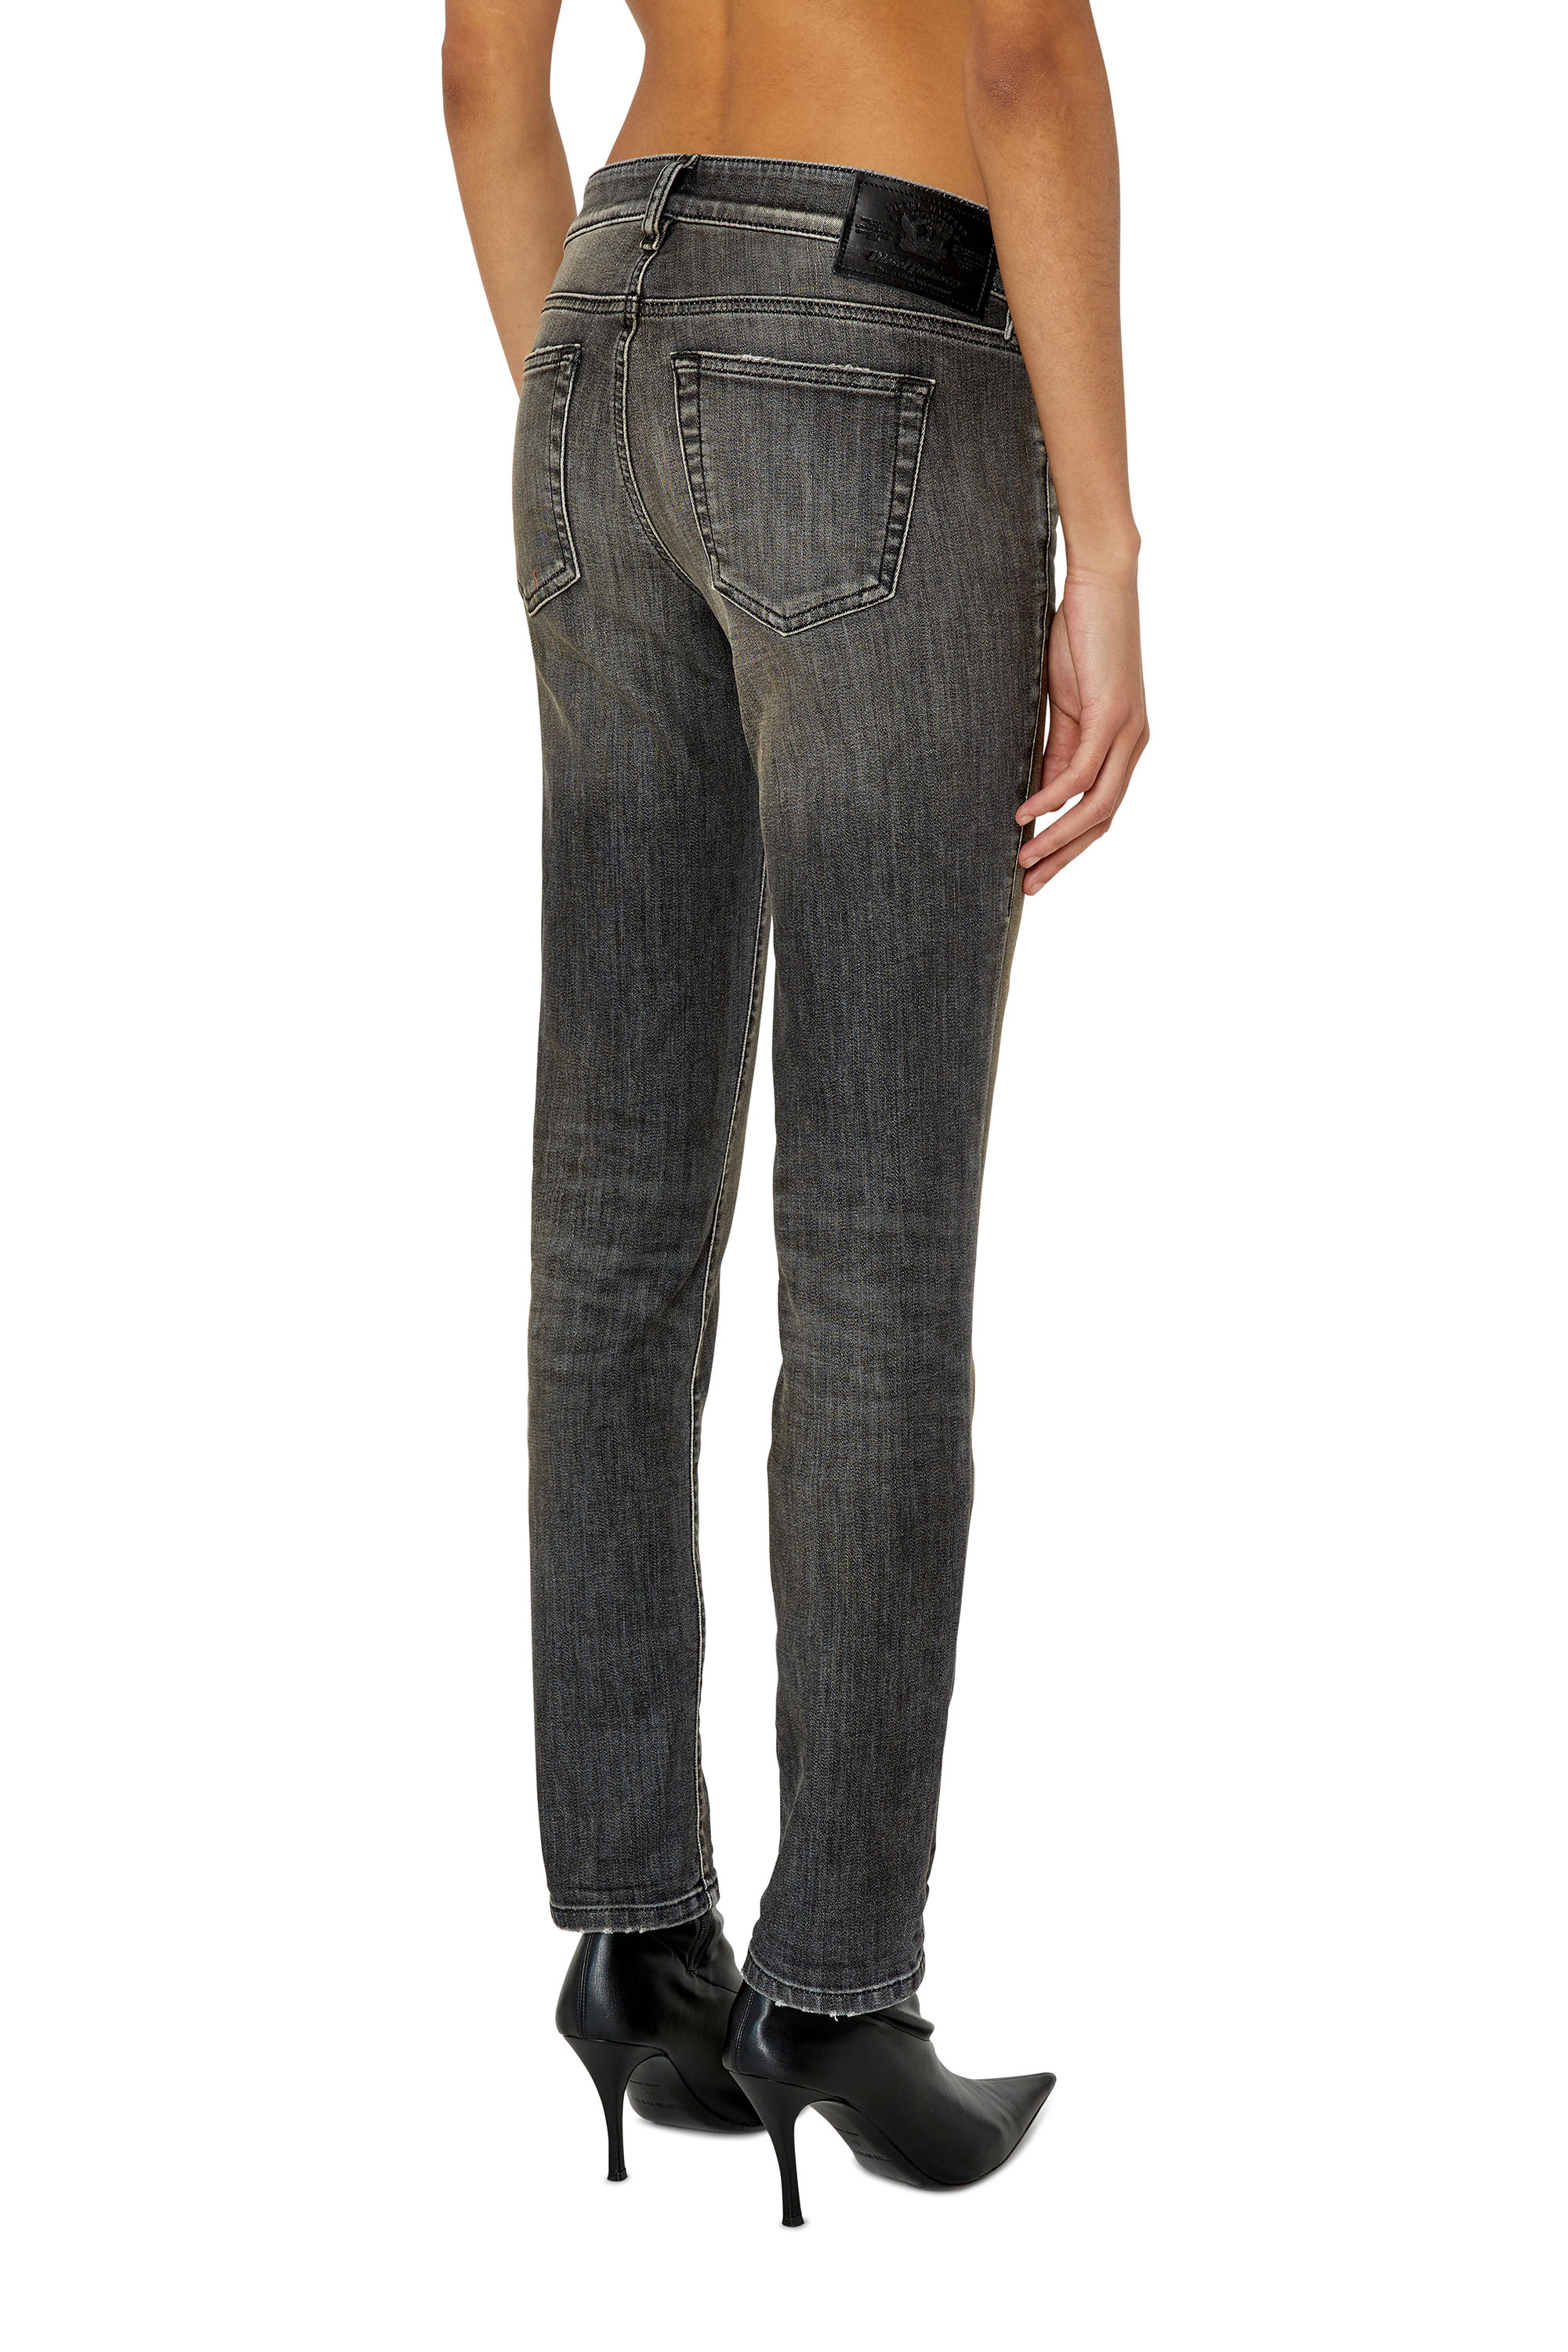 Diesel - D-Ollies JoggJeans® 09F01 Slim, Black/Dark grey - Image 2